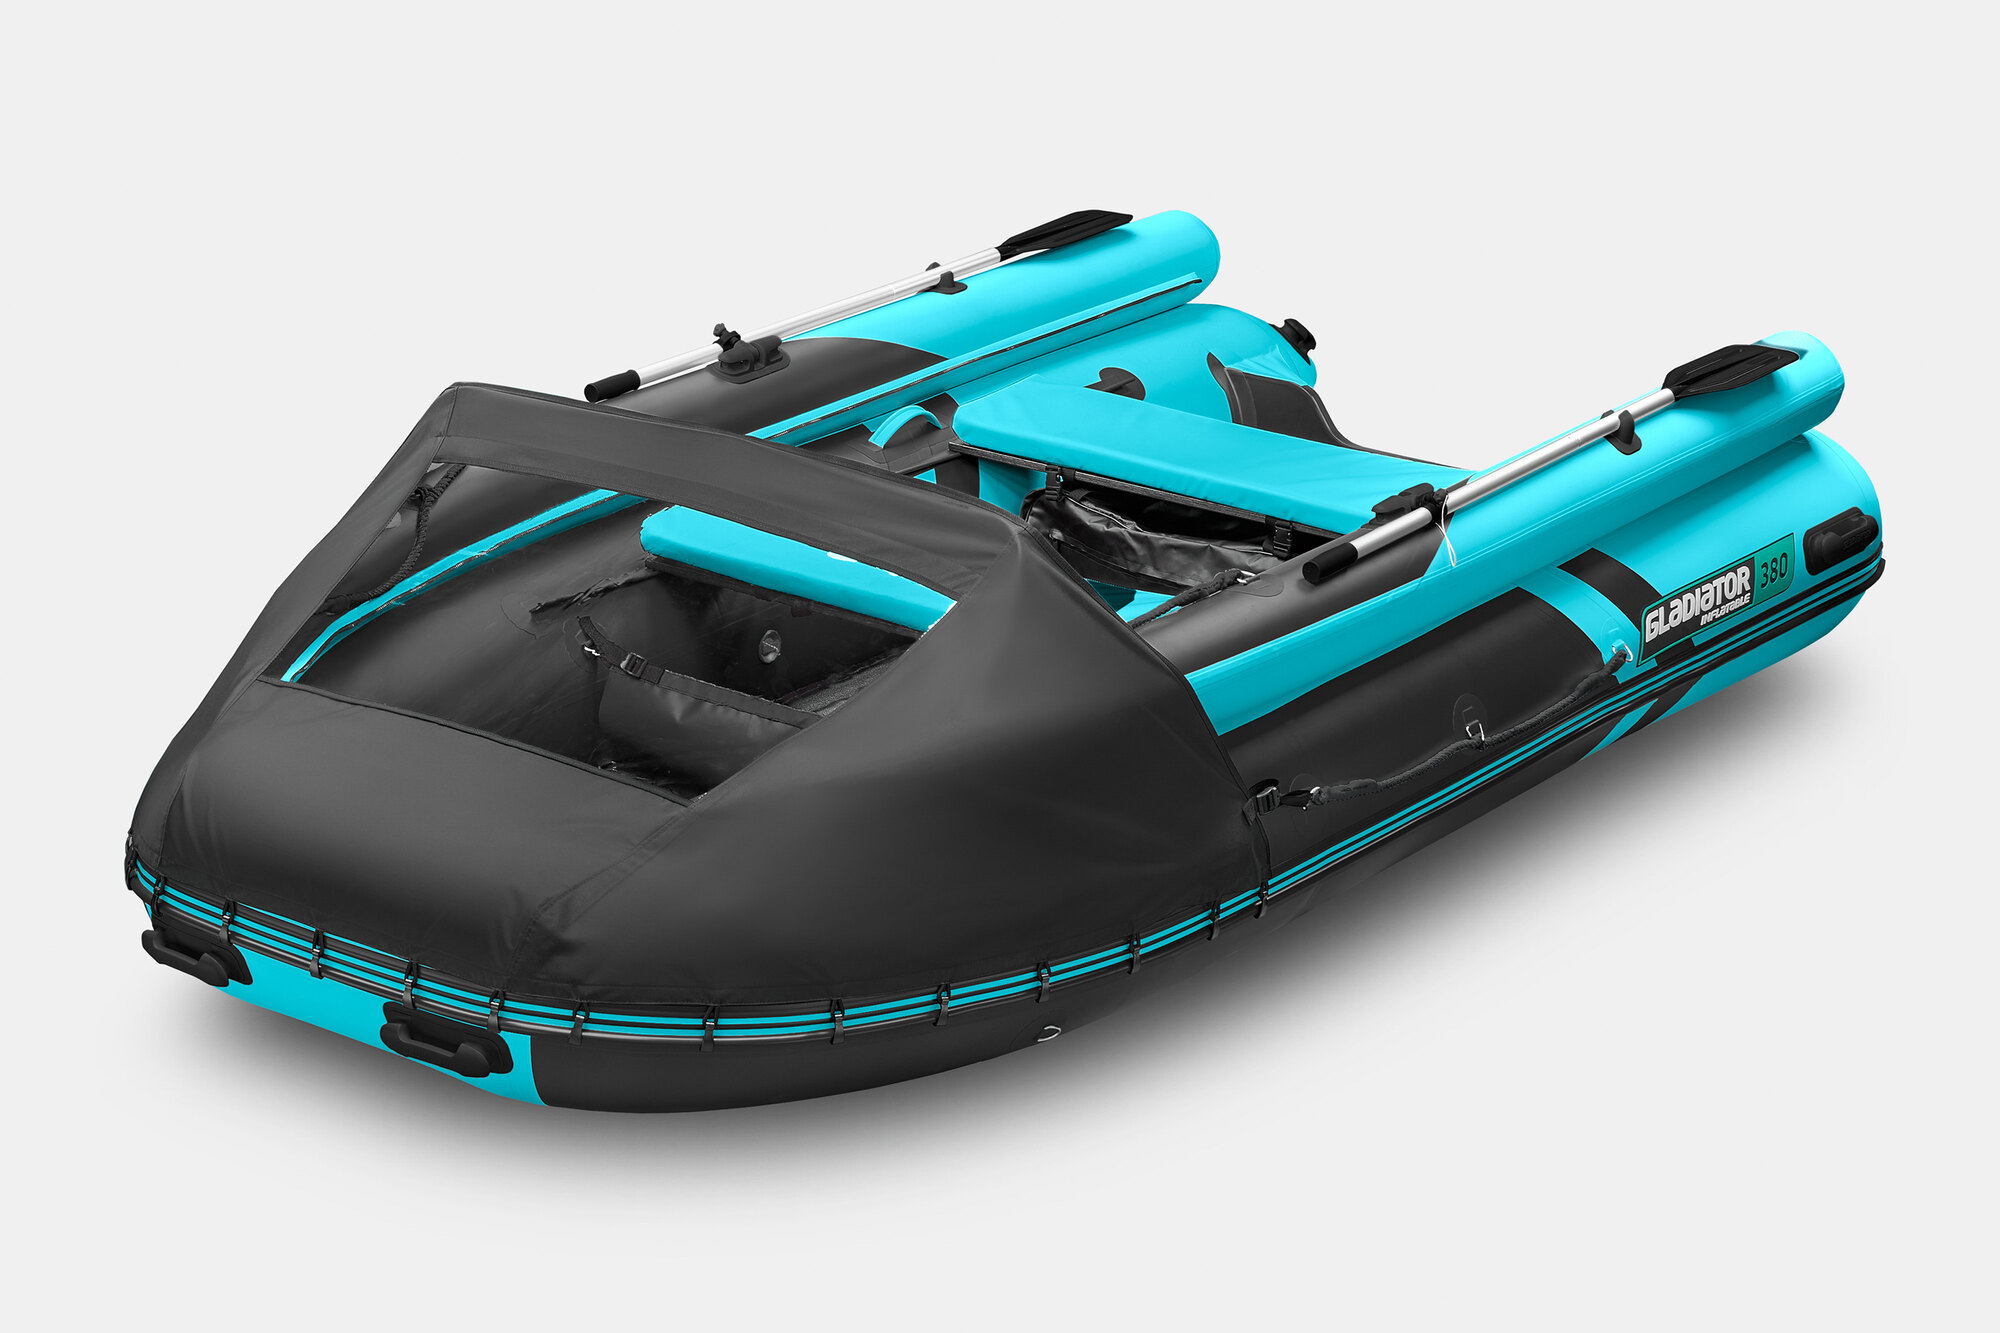 Надувная лодка Gladiator (Гладиатор) E380X, цены в Екатеринбурге: купить вмагазине AquaMoto